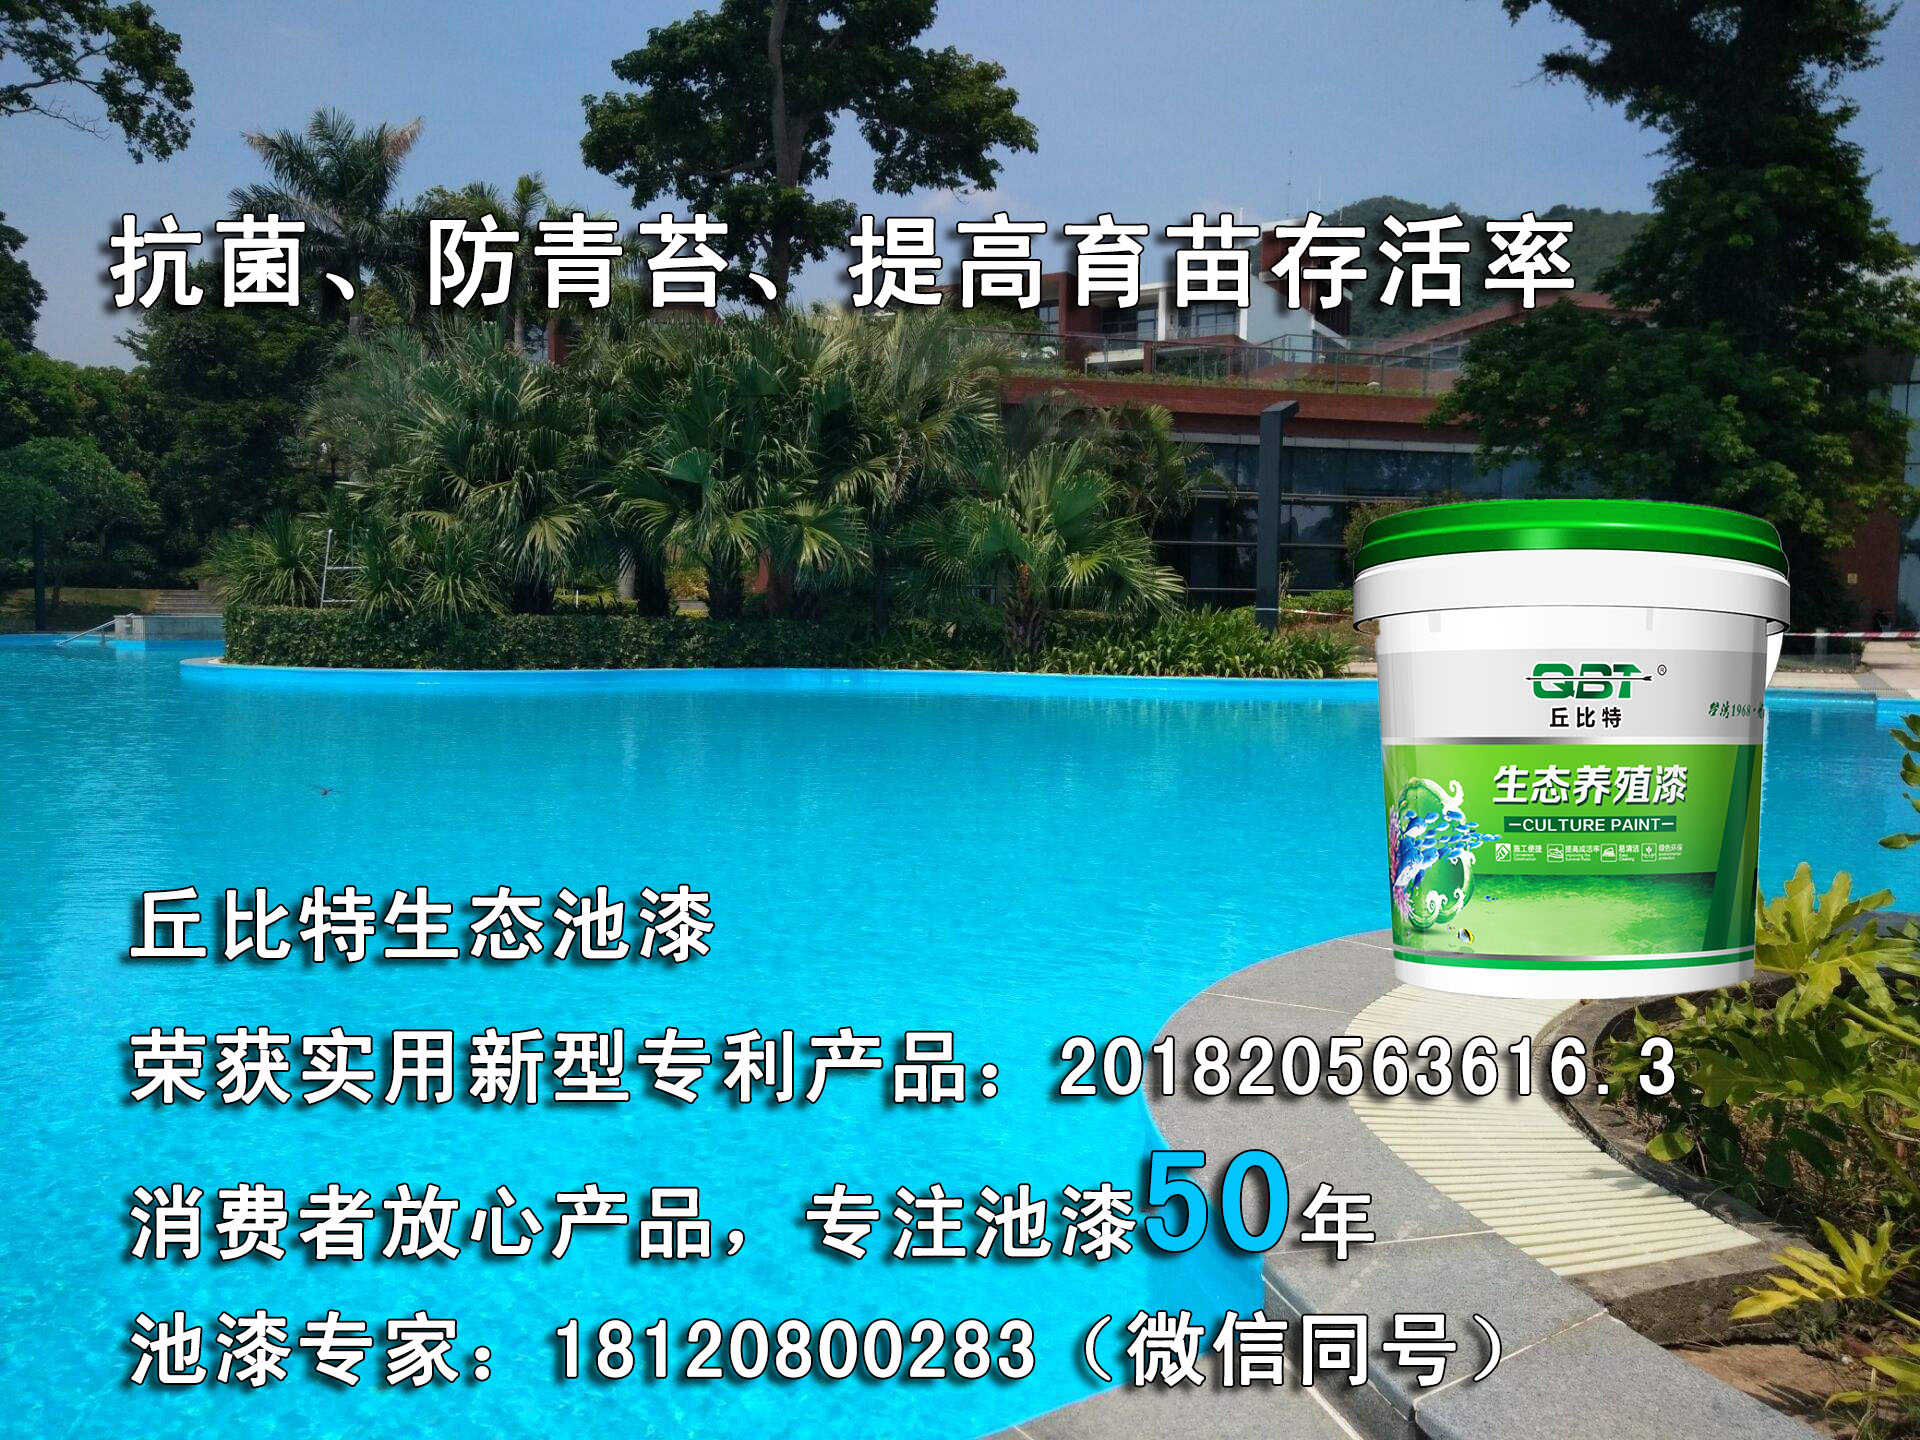 抛售游泳池专用蓝色漆-销量好的丘比特生态泳池漆低价批发